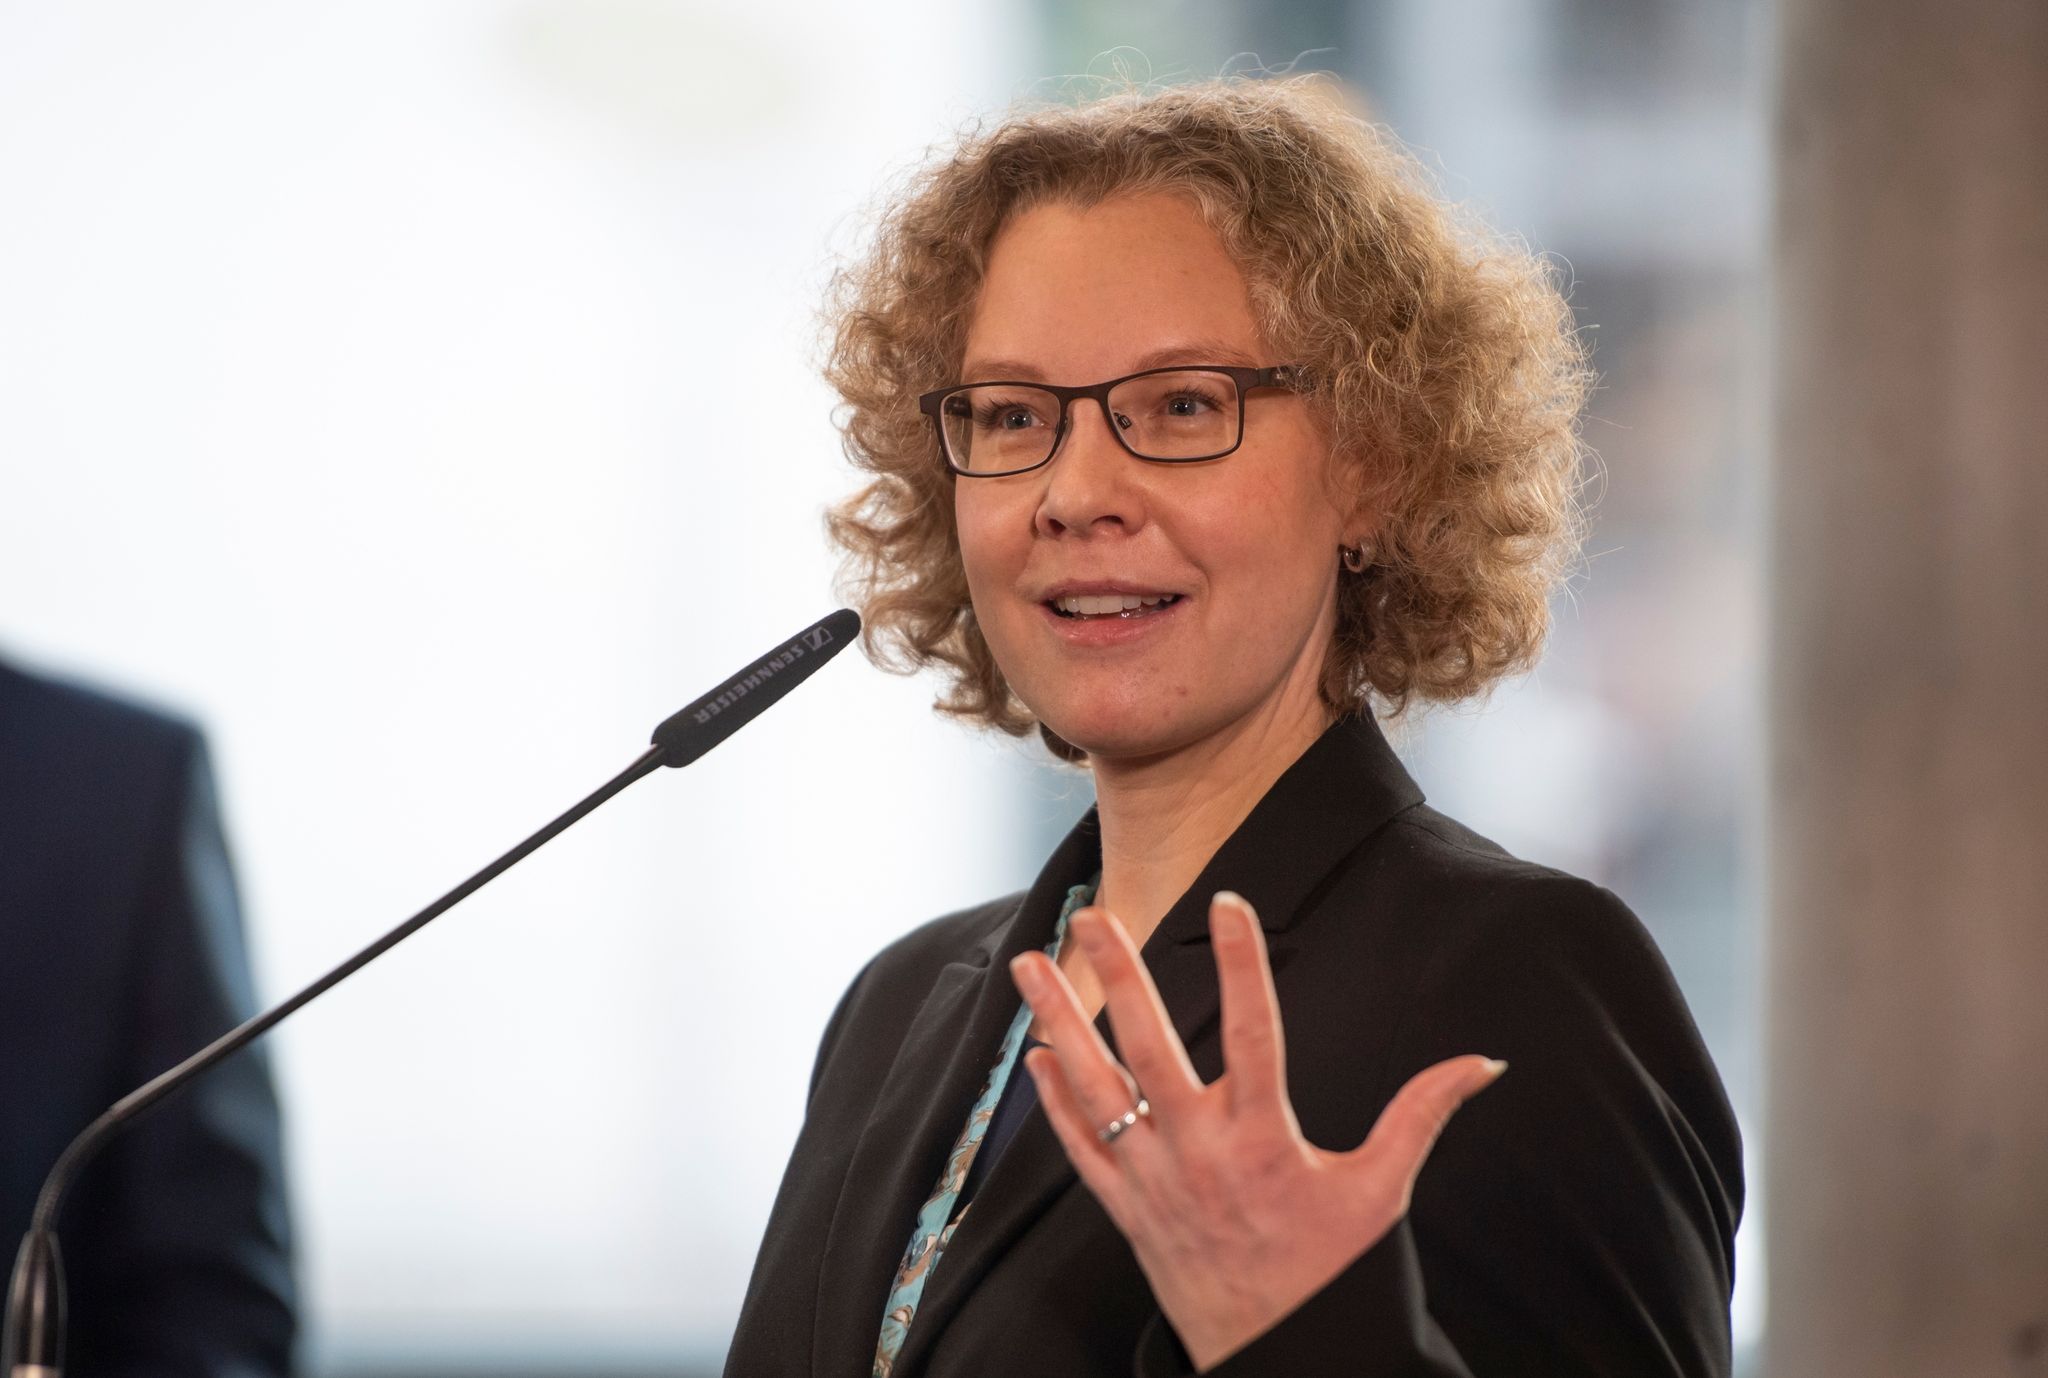 Julia Verlinden (Bündnis 90/Die Grünen), Mitglied des Deutschen Bundestages, bei einer Pressekonferenz. Die Grünen wollen nach dem Kompromiss im Verbrenner-Streit in der Steuerpolitik andere Schwerpunkte setzen als FDP-Bundesfinanzminister Lindner.